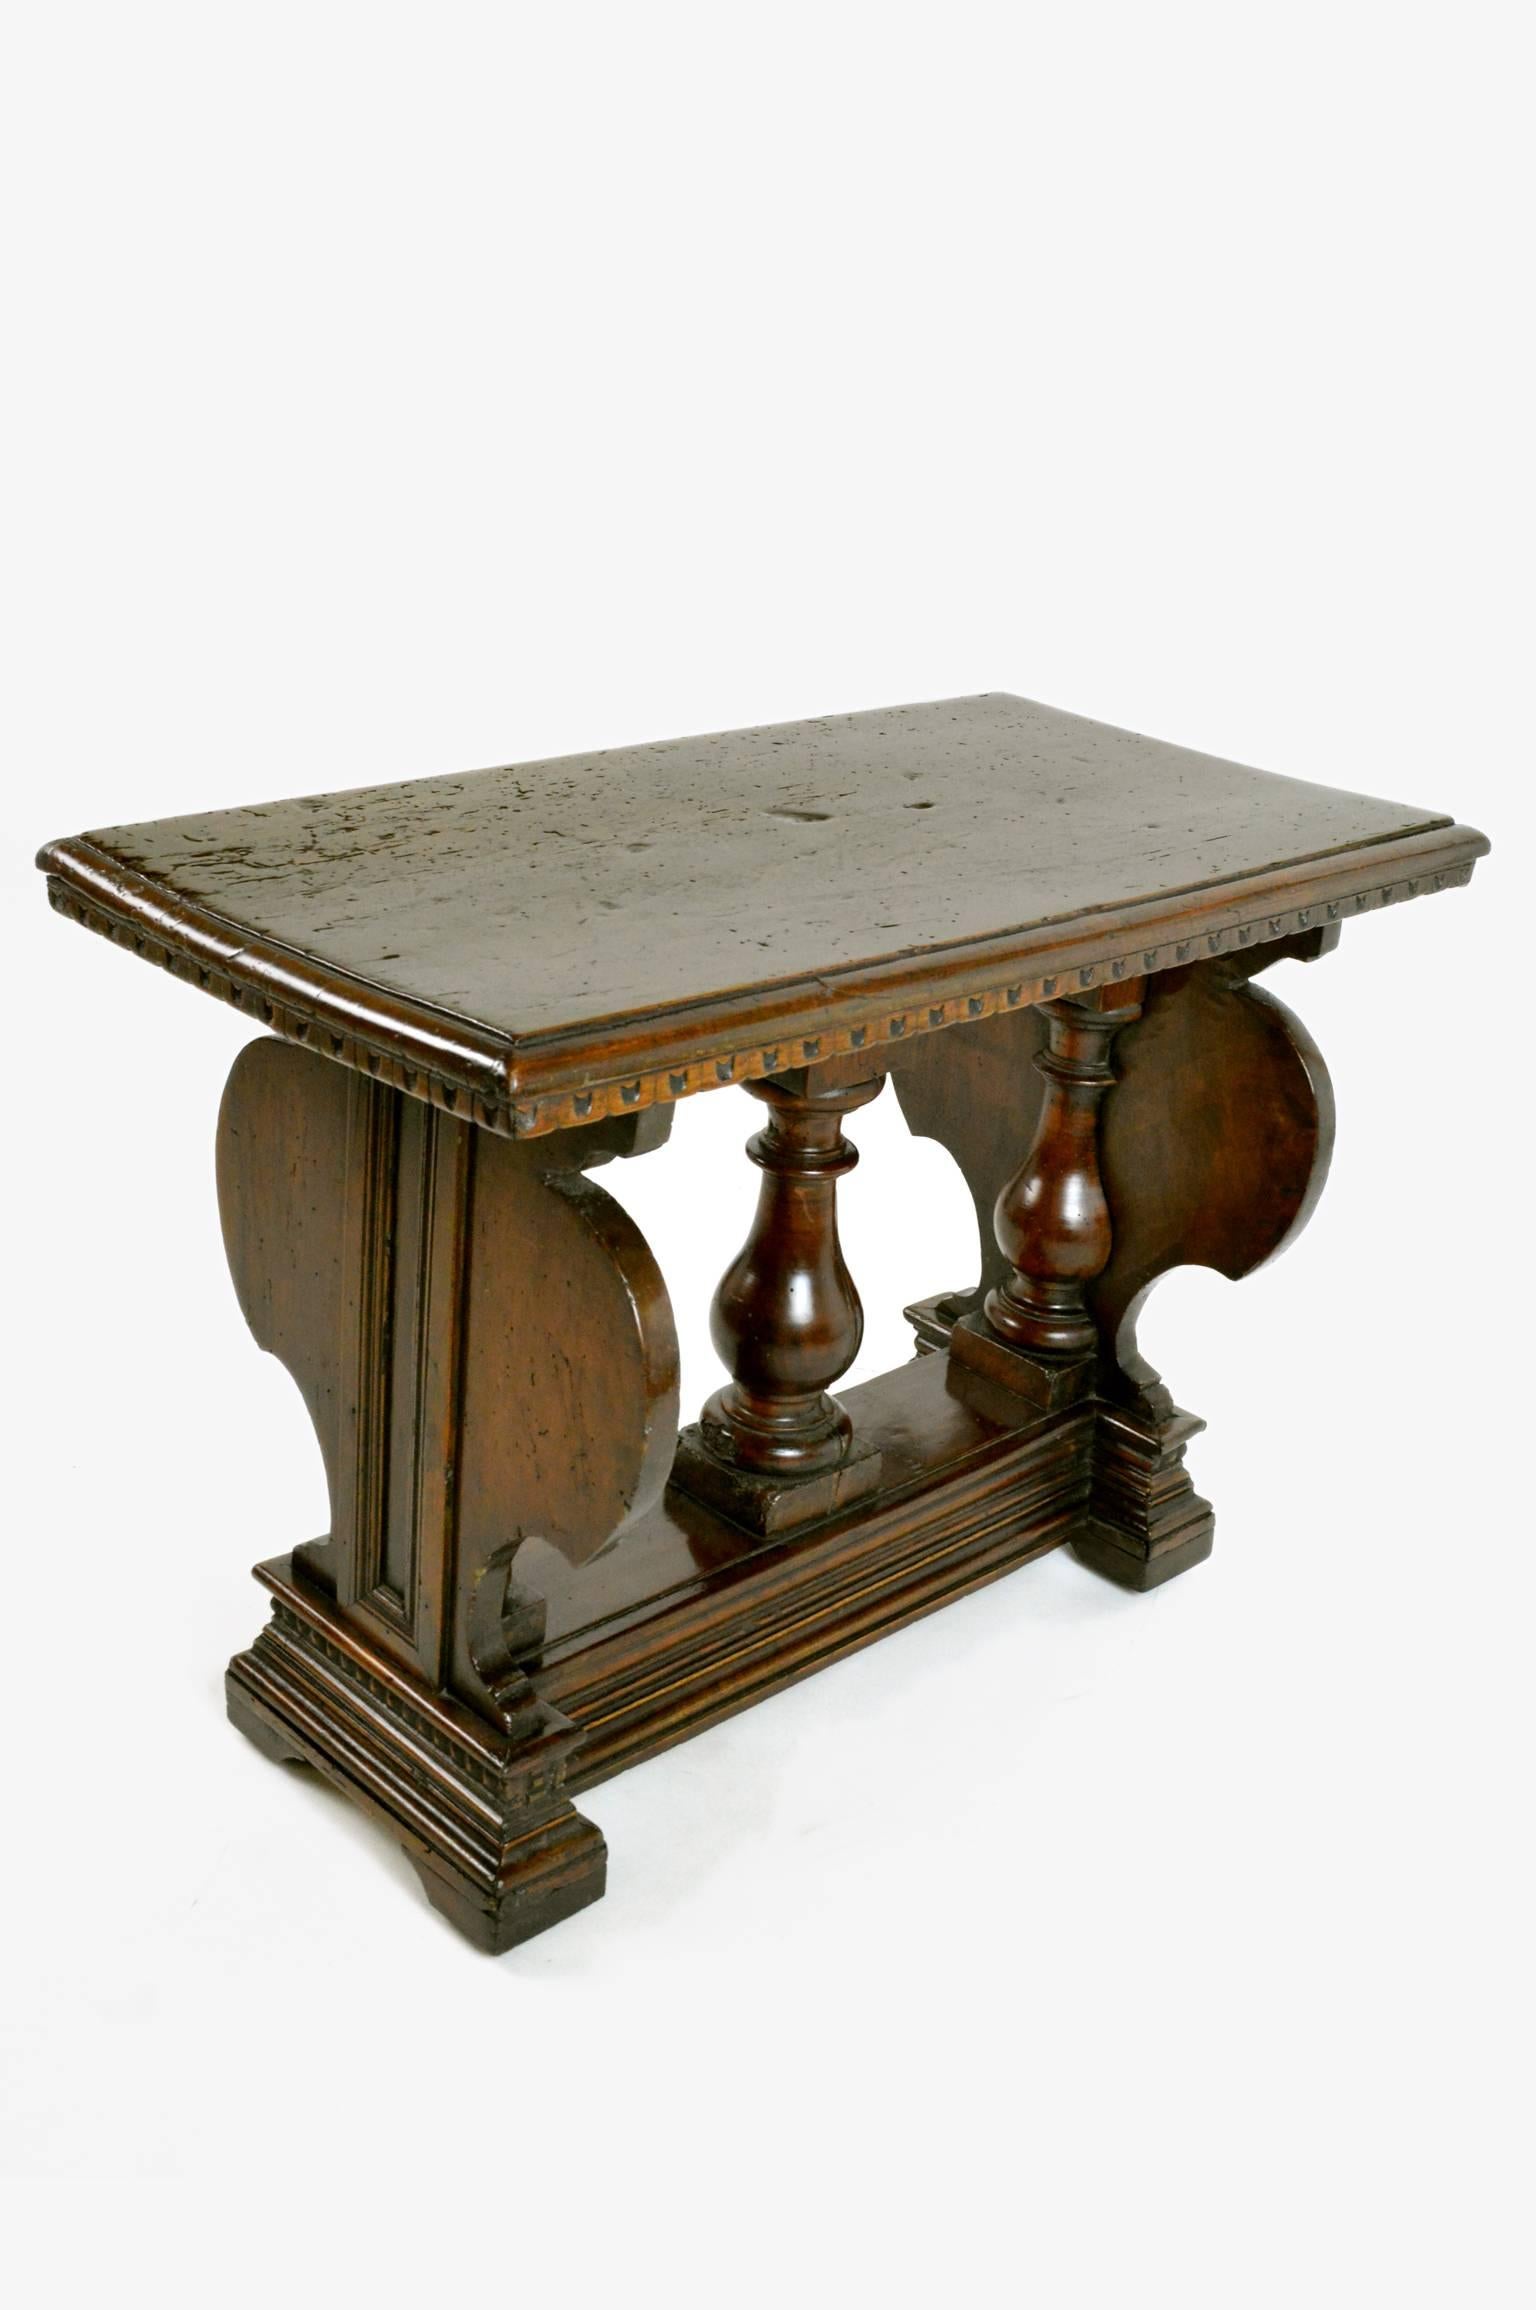 18th century Renaissance style Italian walnut side table.